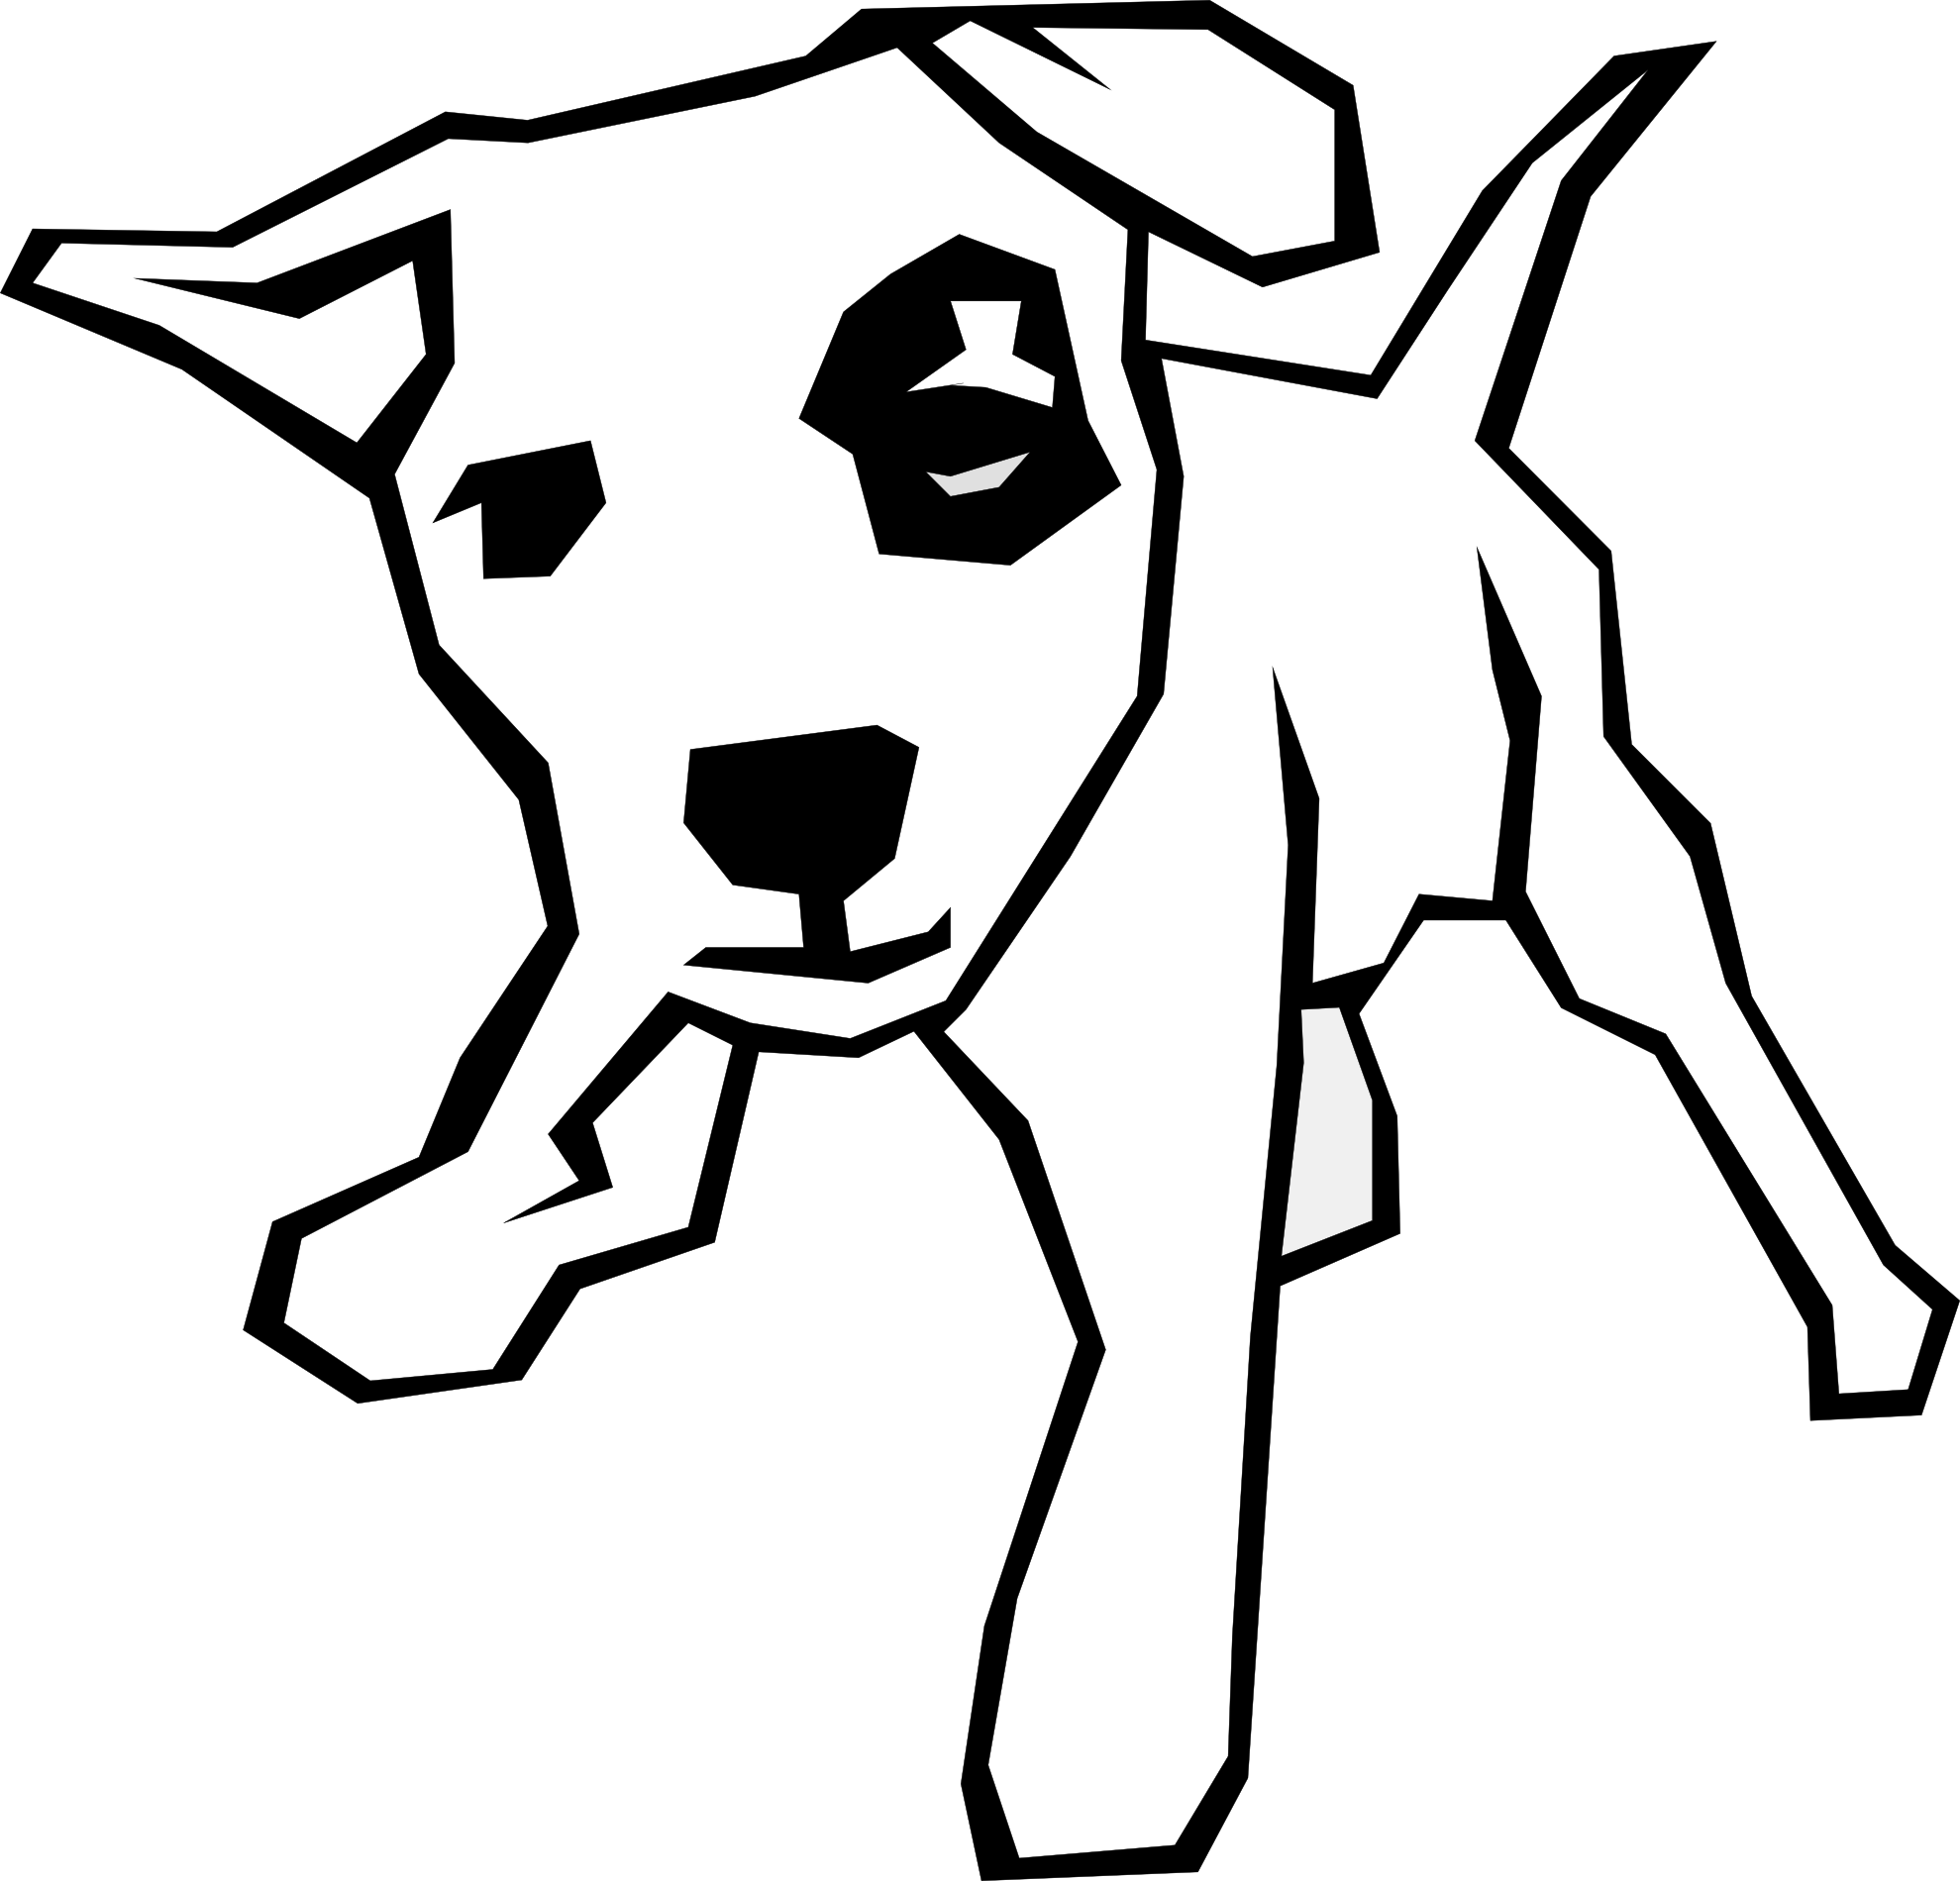 Dog 3 Drawn Strai 1 Black White Line Animal Art Coloring Sheet ...